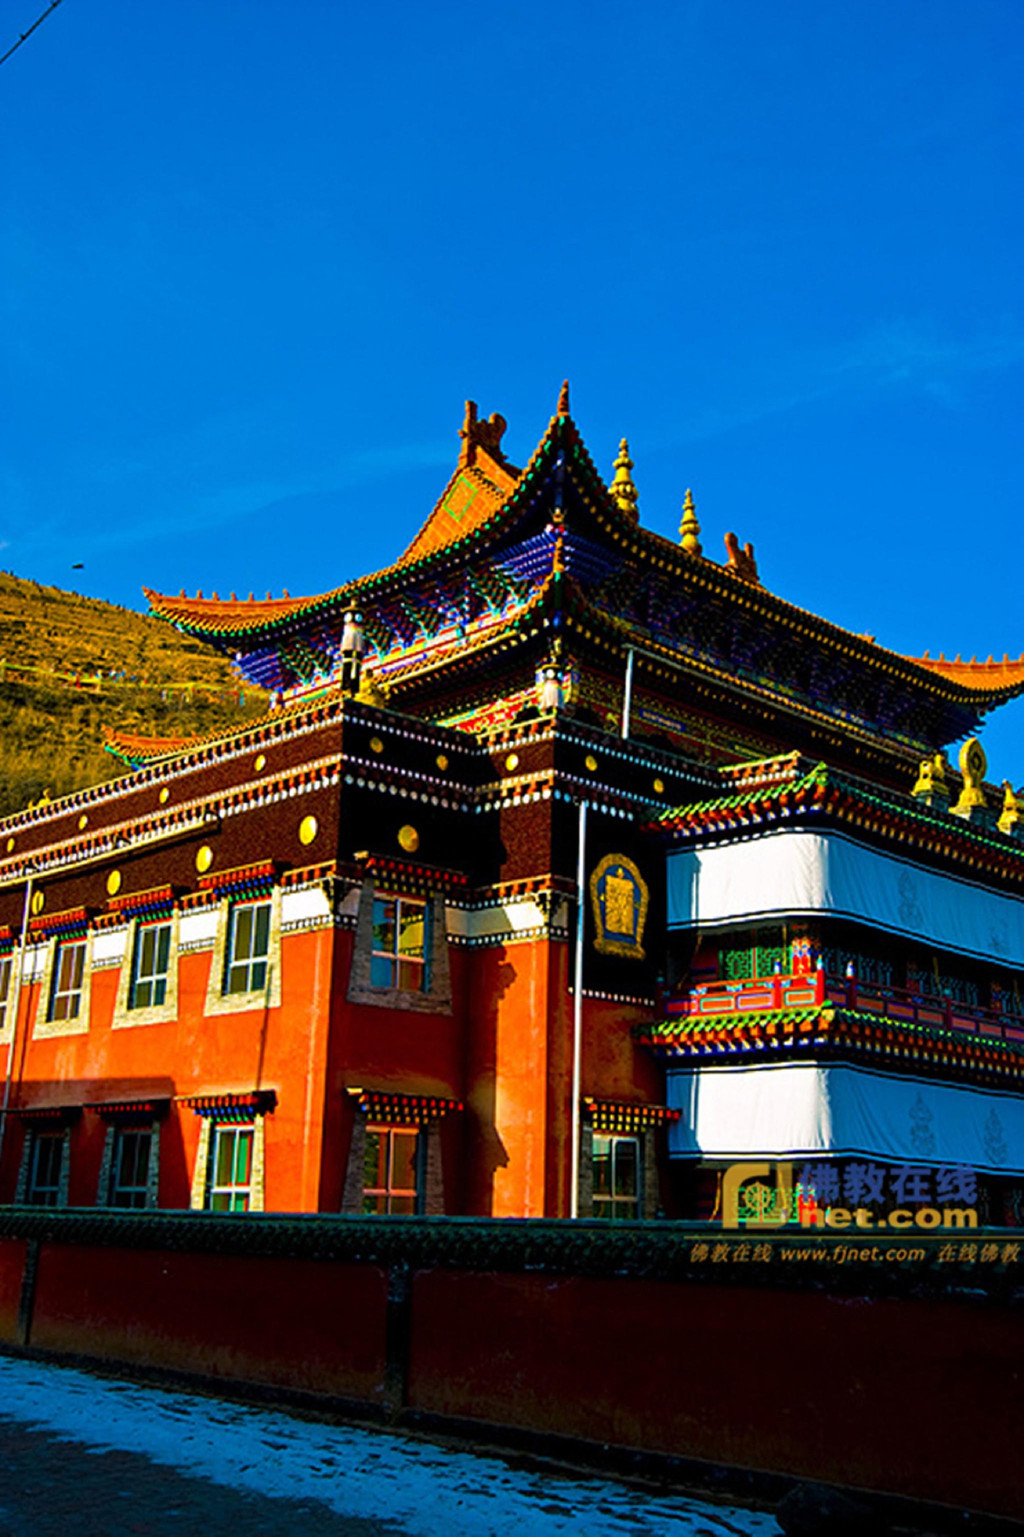 建筑巍峨,金碧辉煌,气势恢宏,是我国著名的藏传佛教格鲁派六大寺院之